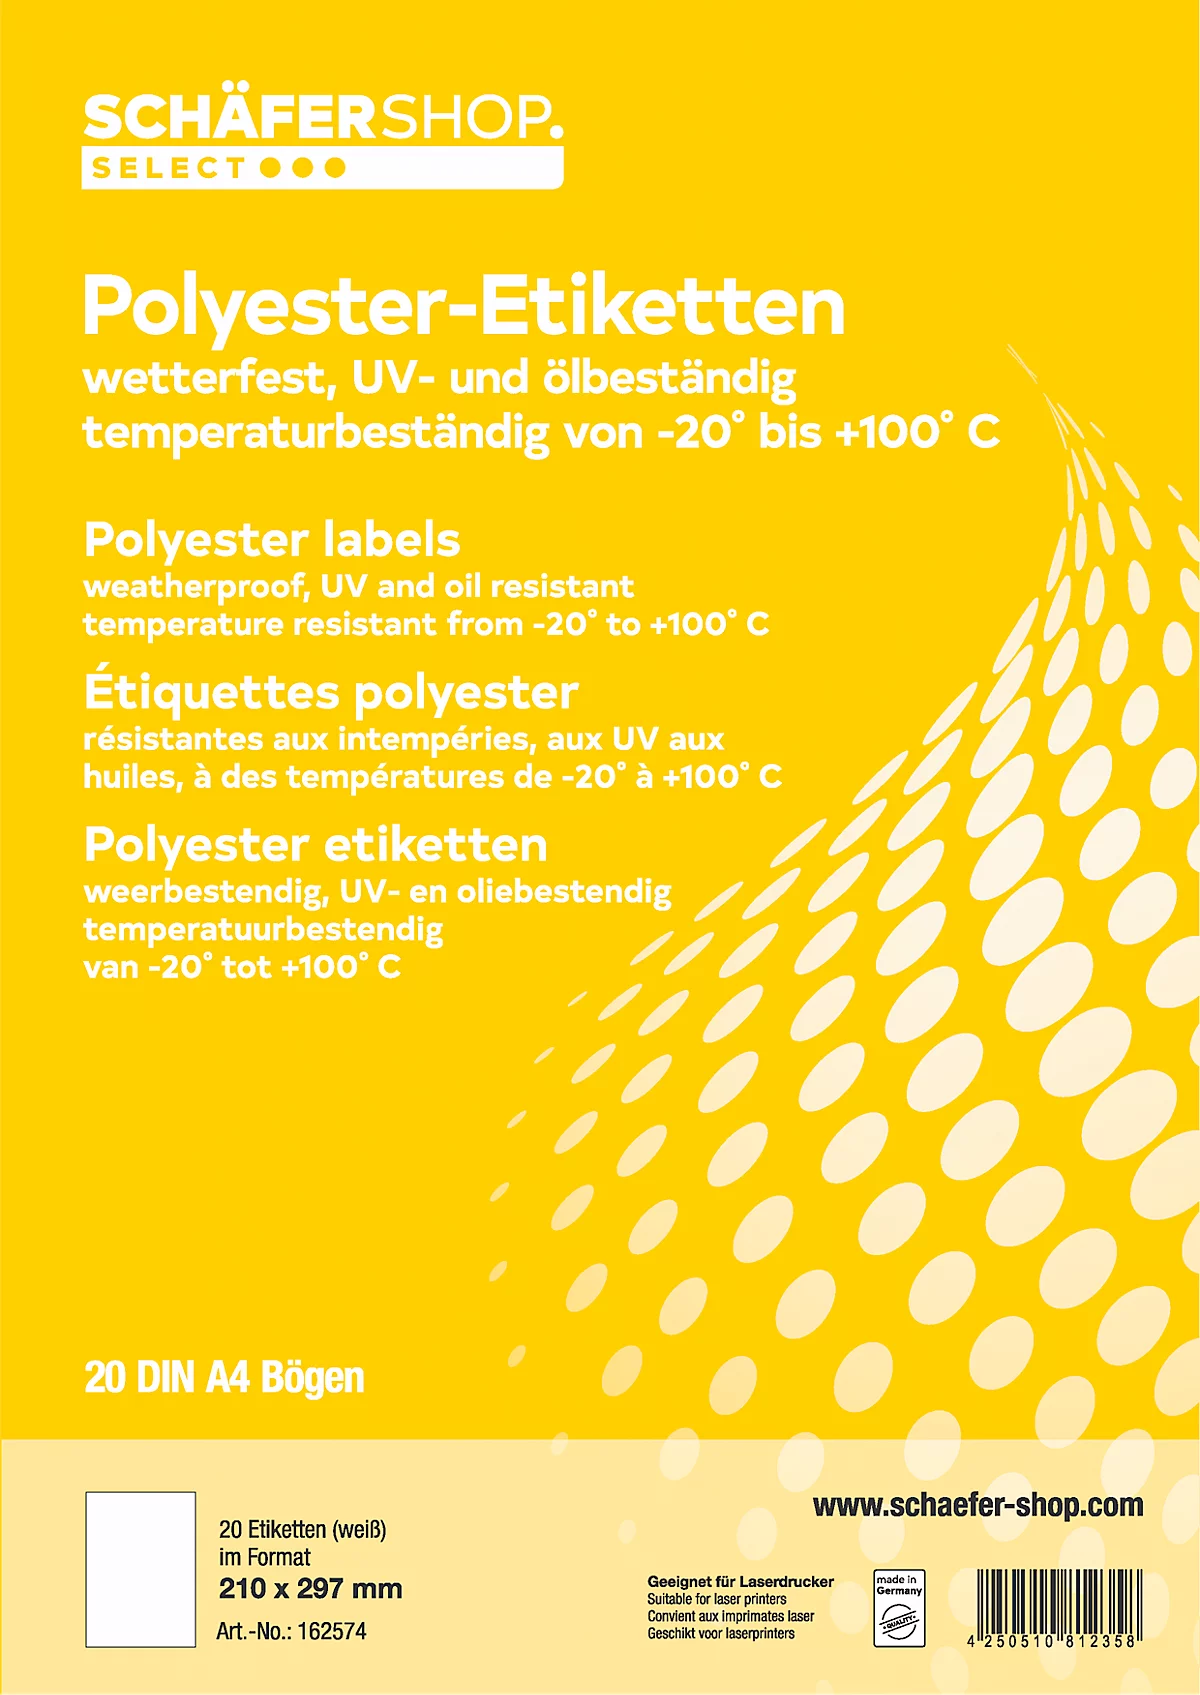 Schäfer Shop Select Wetterfeste Etiketten, 210 x 297 mm, Polyester weiß, 20 Blatt